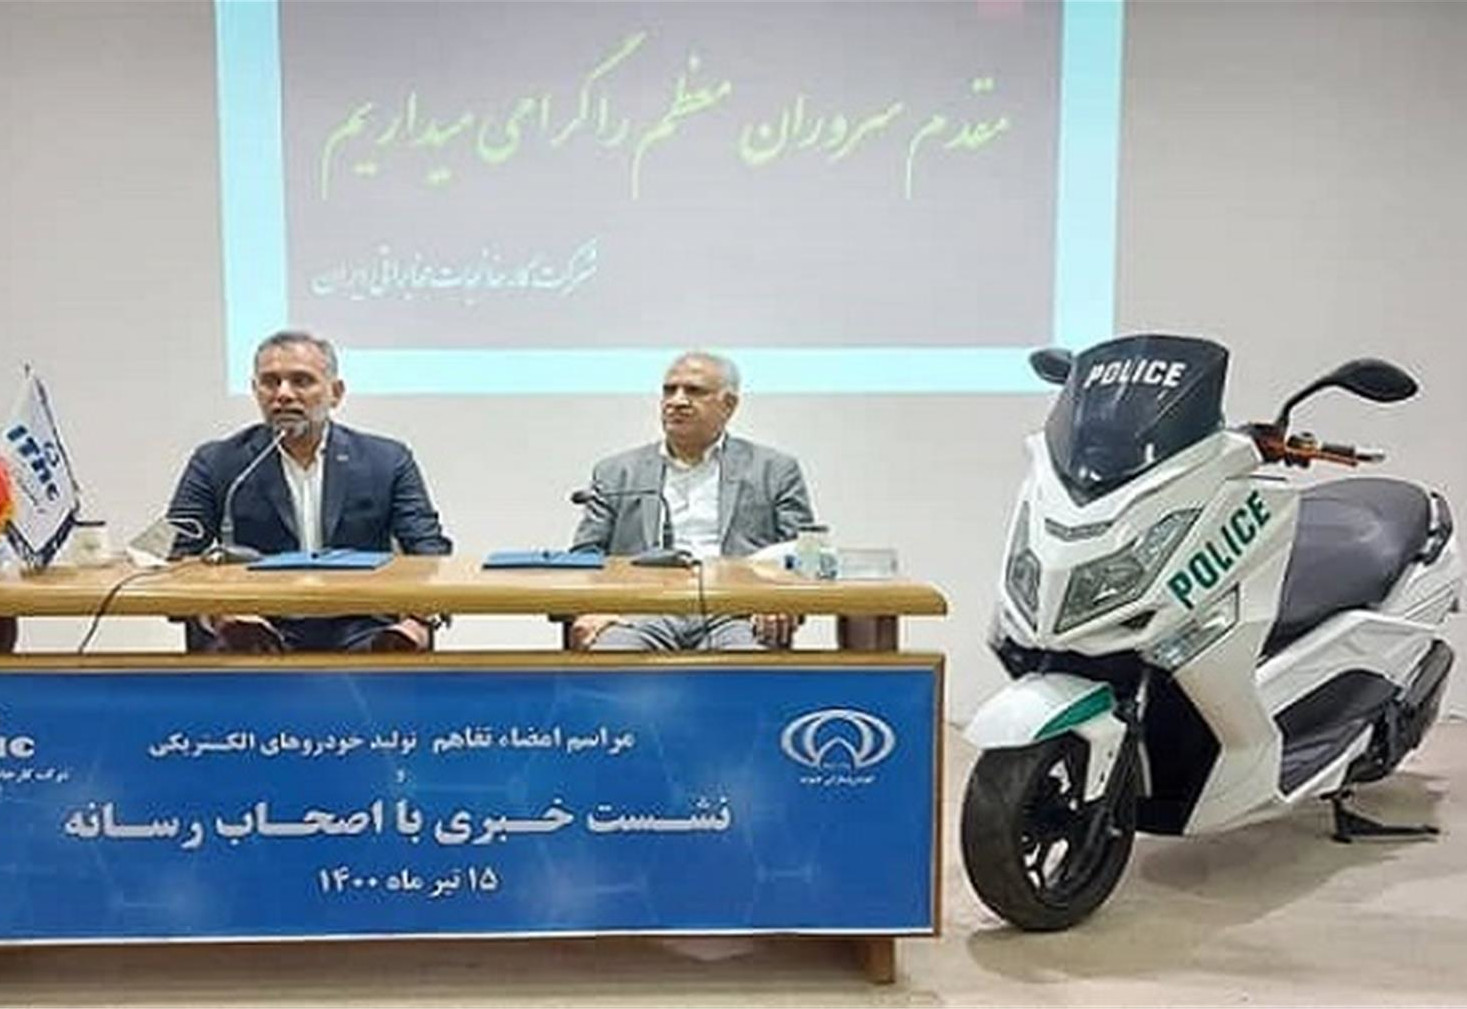 مراسم امضای تفاهمنامه شرکت کارخانجات مخابراتی ایران و شرکت خودرو سازان جنوب، برای تولید خورو و موتور سیکلت الکتریکی